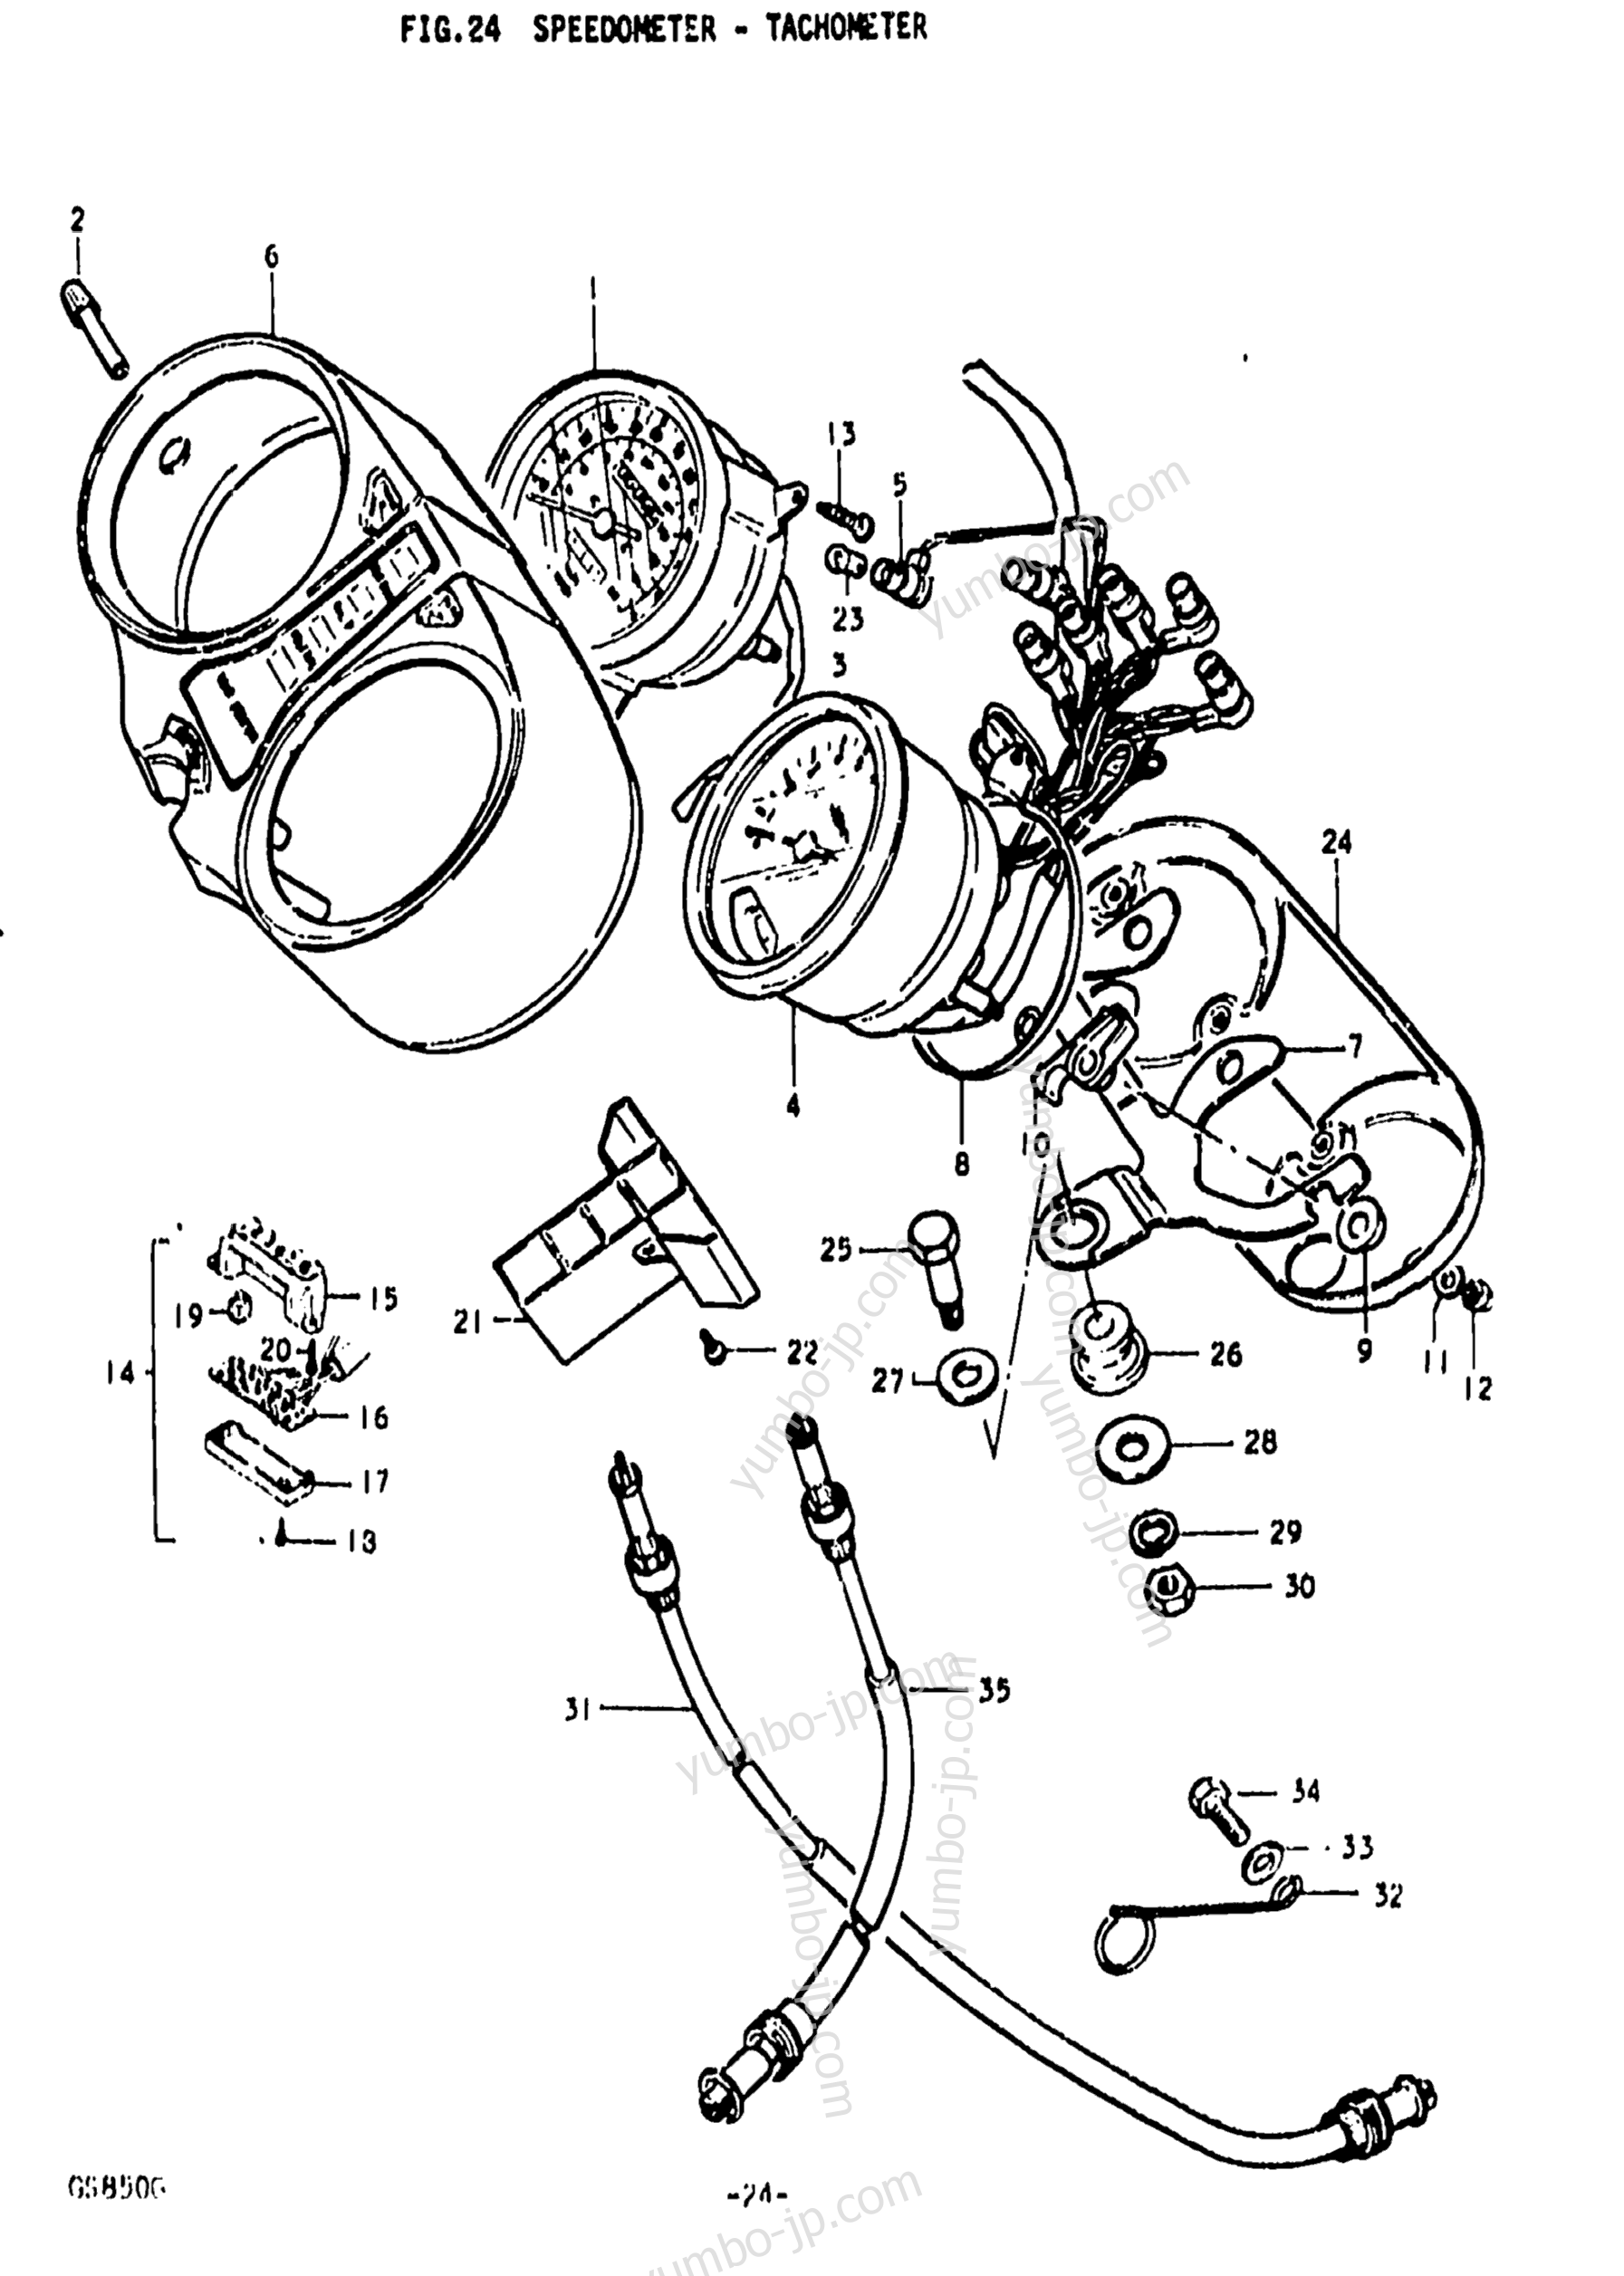 Speedometer-Tachometer для мотоциклов SUZUKI GS850G 1979 г.